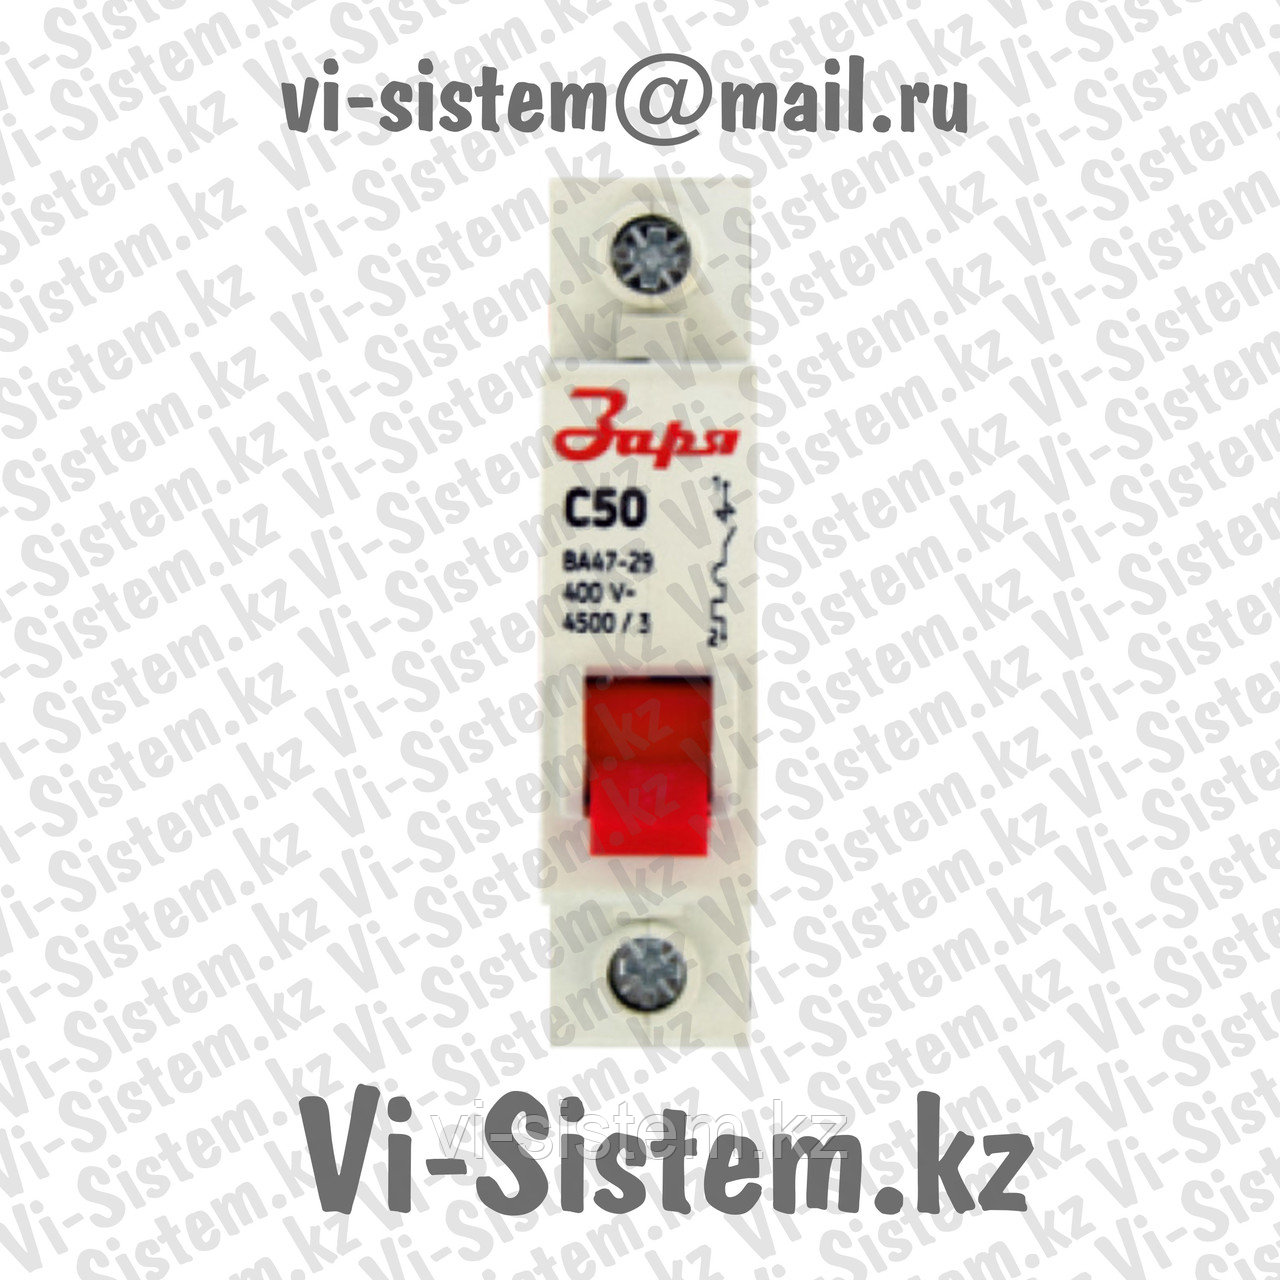 Автоматический выключатель Заря C50 1P-50A